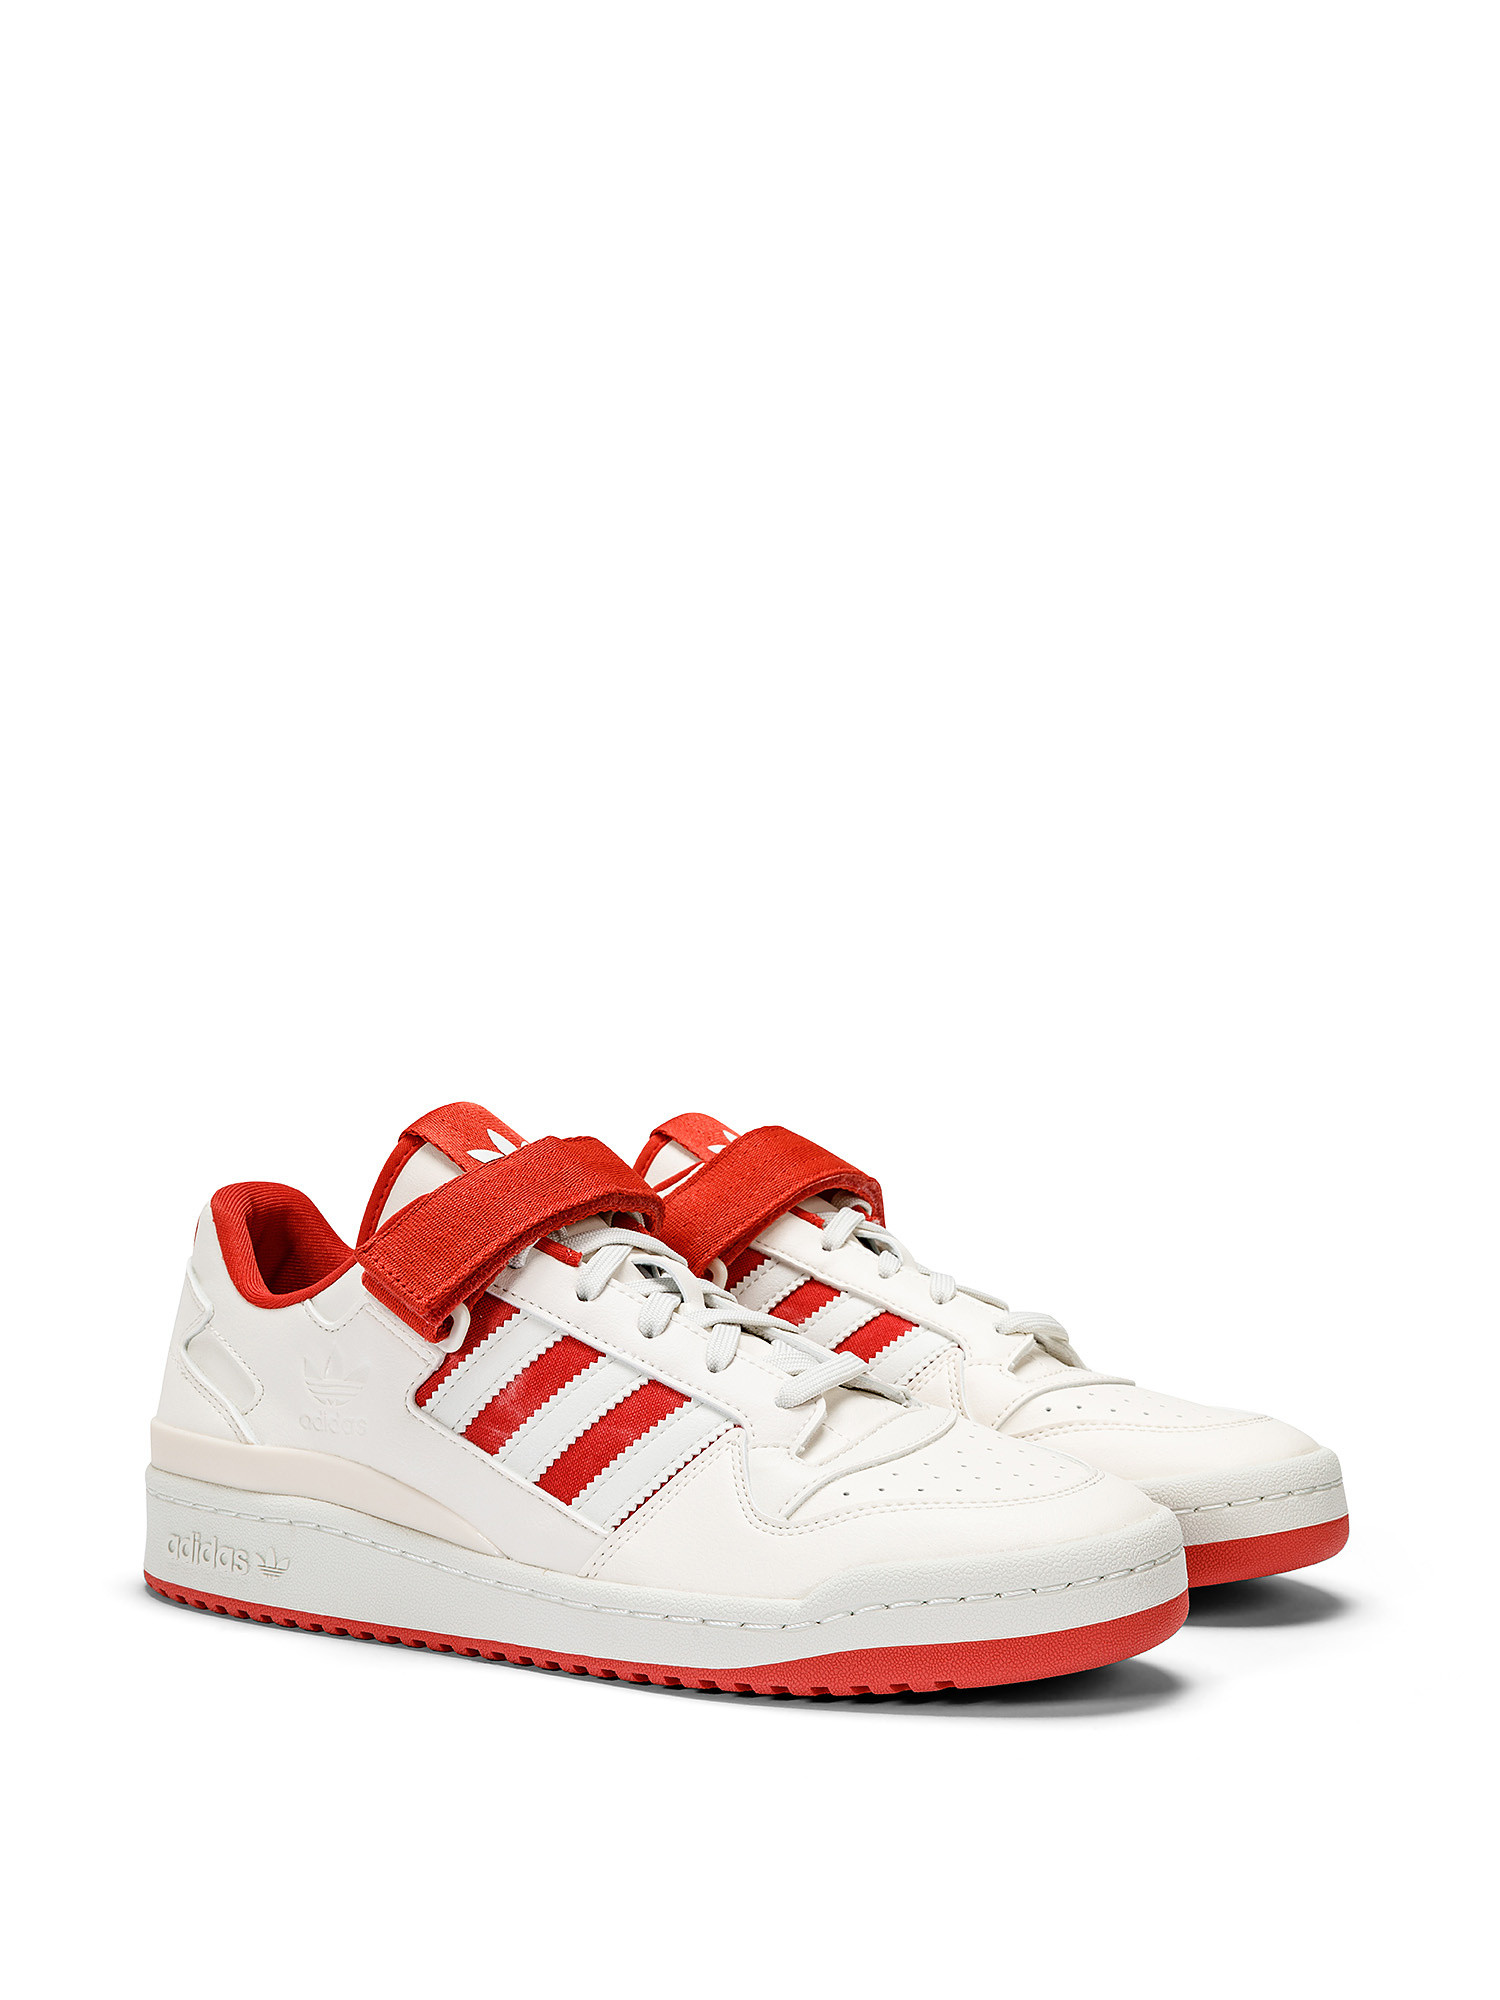 Adidas - Scarpe Forum Low, Bianco, large image number 1